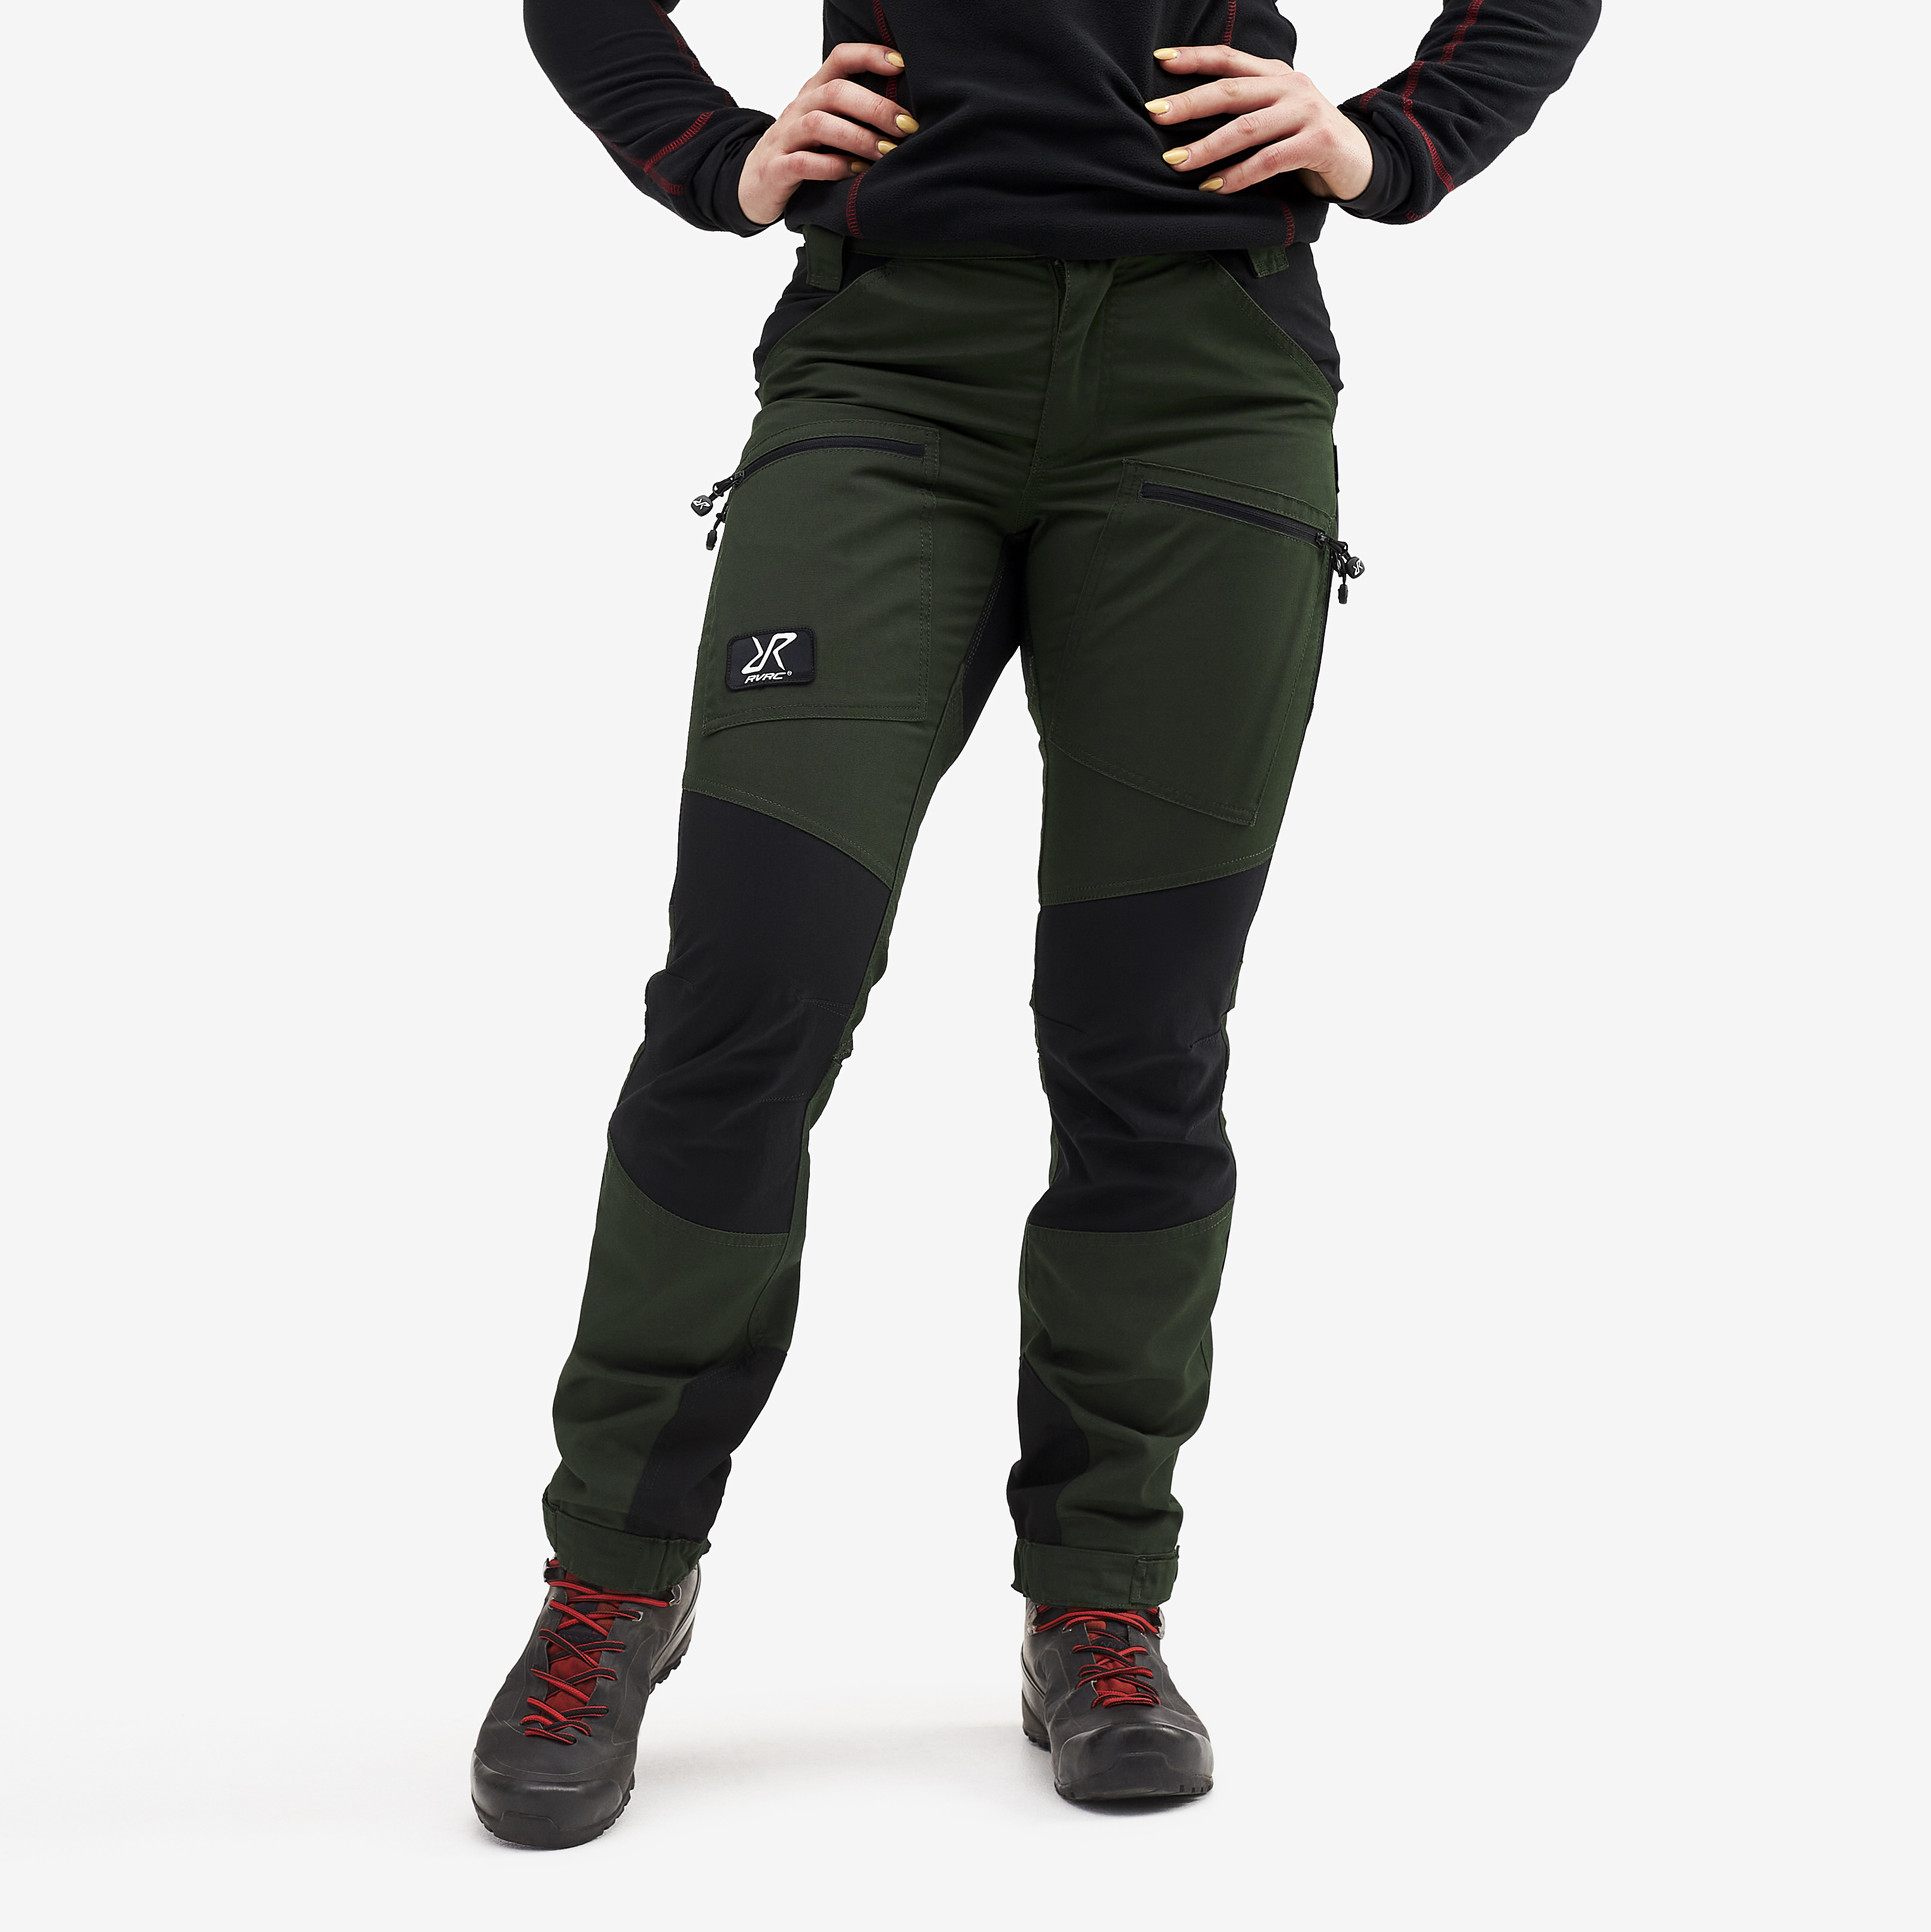 Nordwand Pro Short spodnie trekkingowe damskie zielony